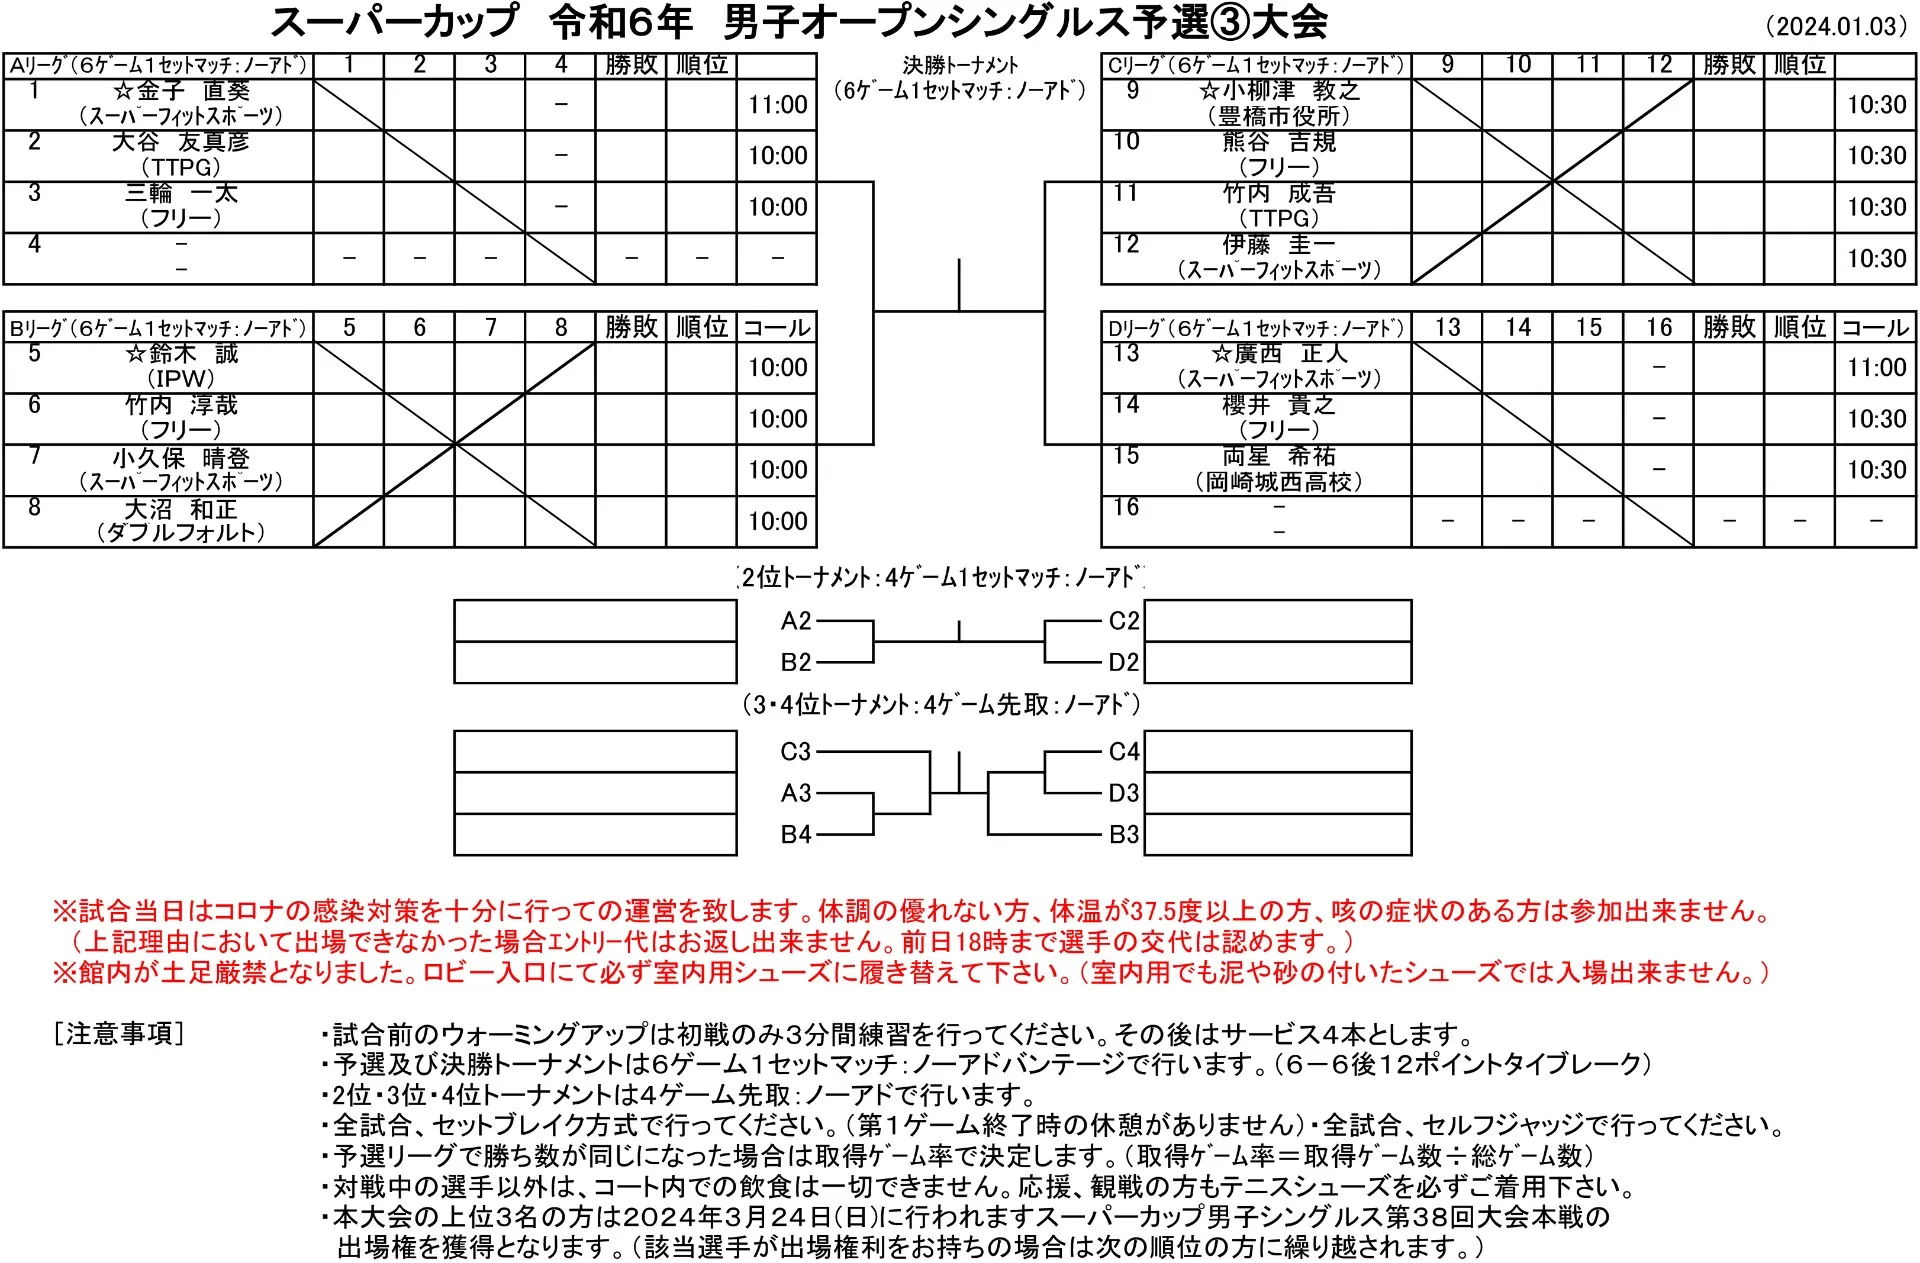 【ドロー発表】1/3男子オープンシングルス予選③